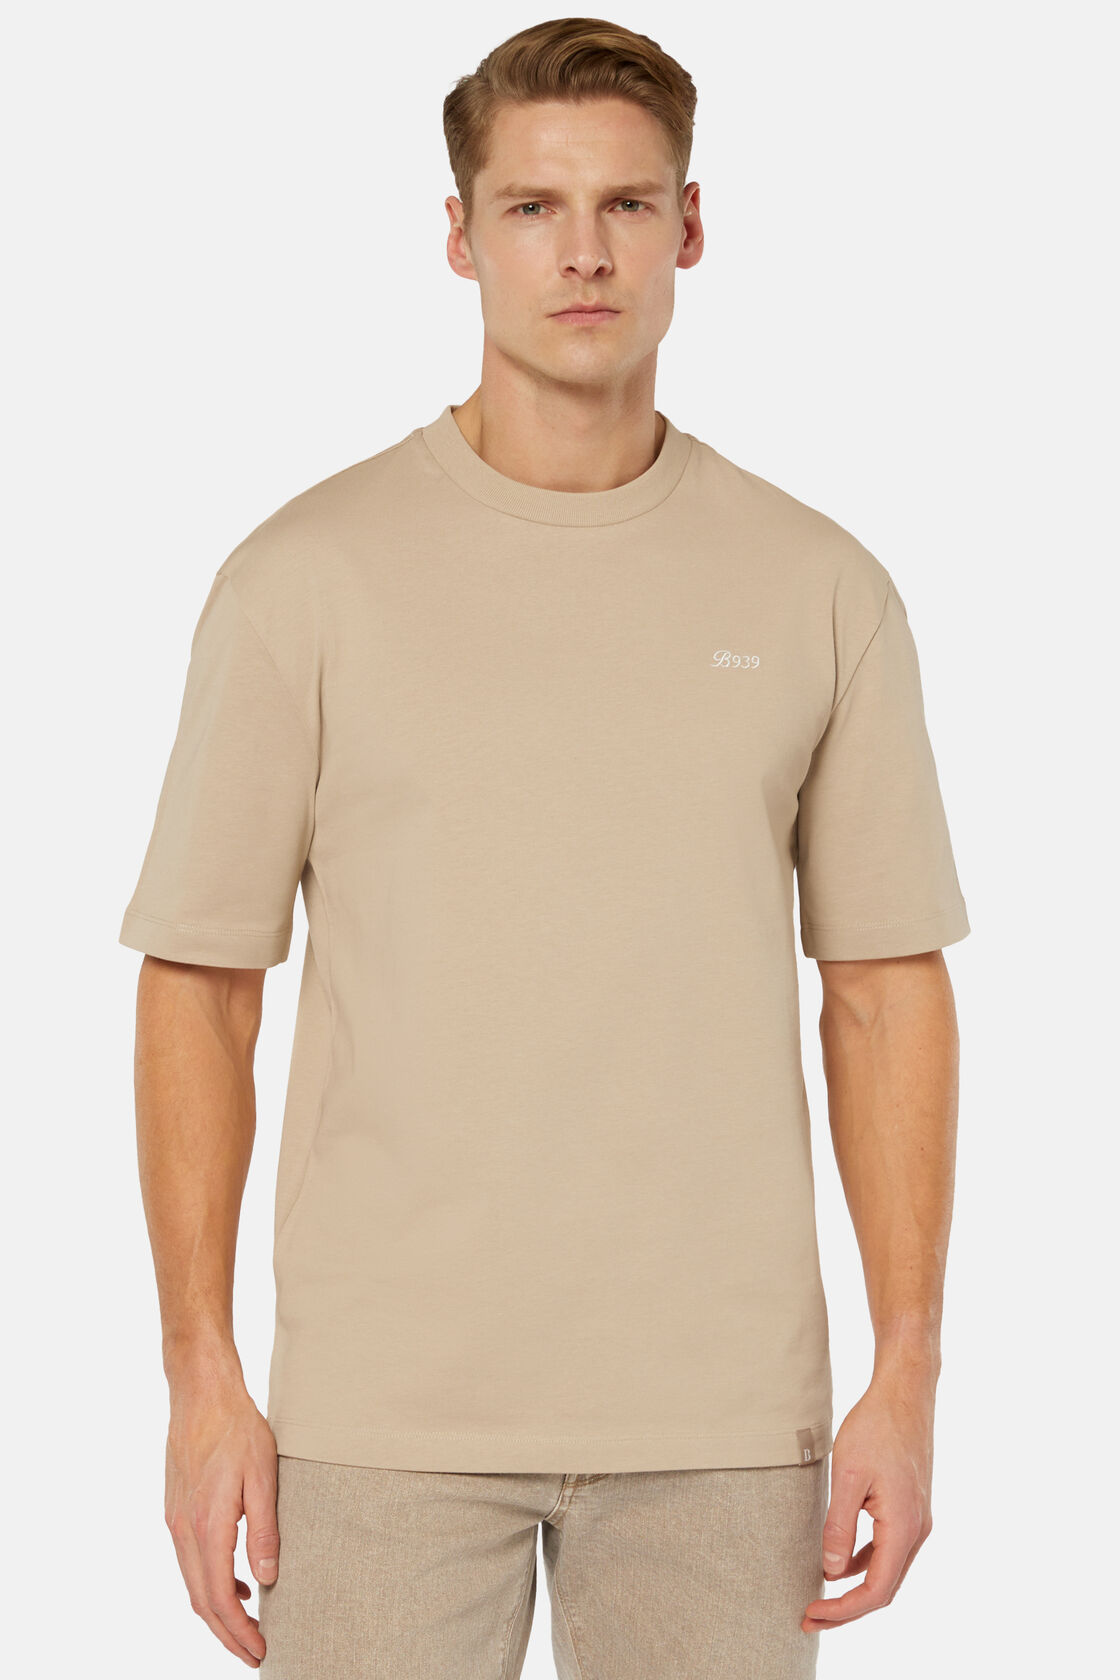 T-Shirt Mistura de Algodão Orgânico, Beige, hi-res